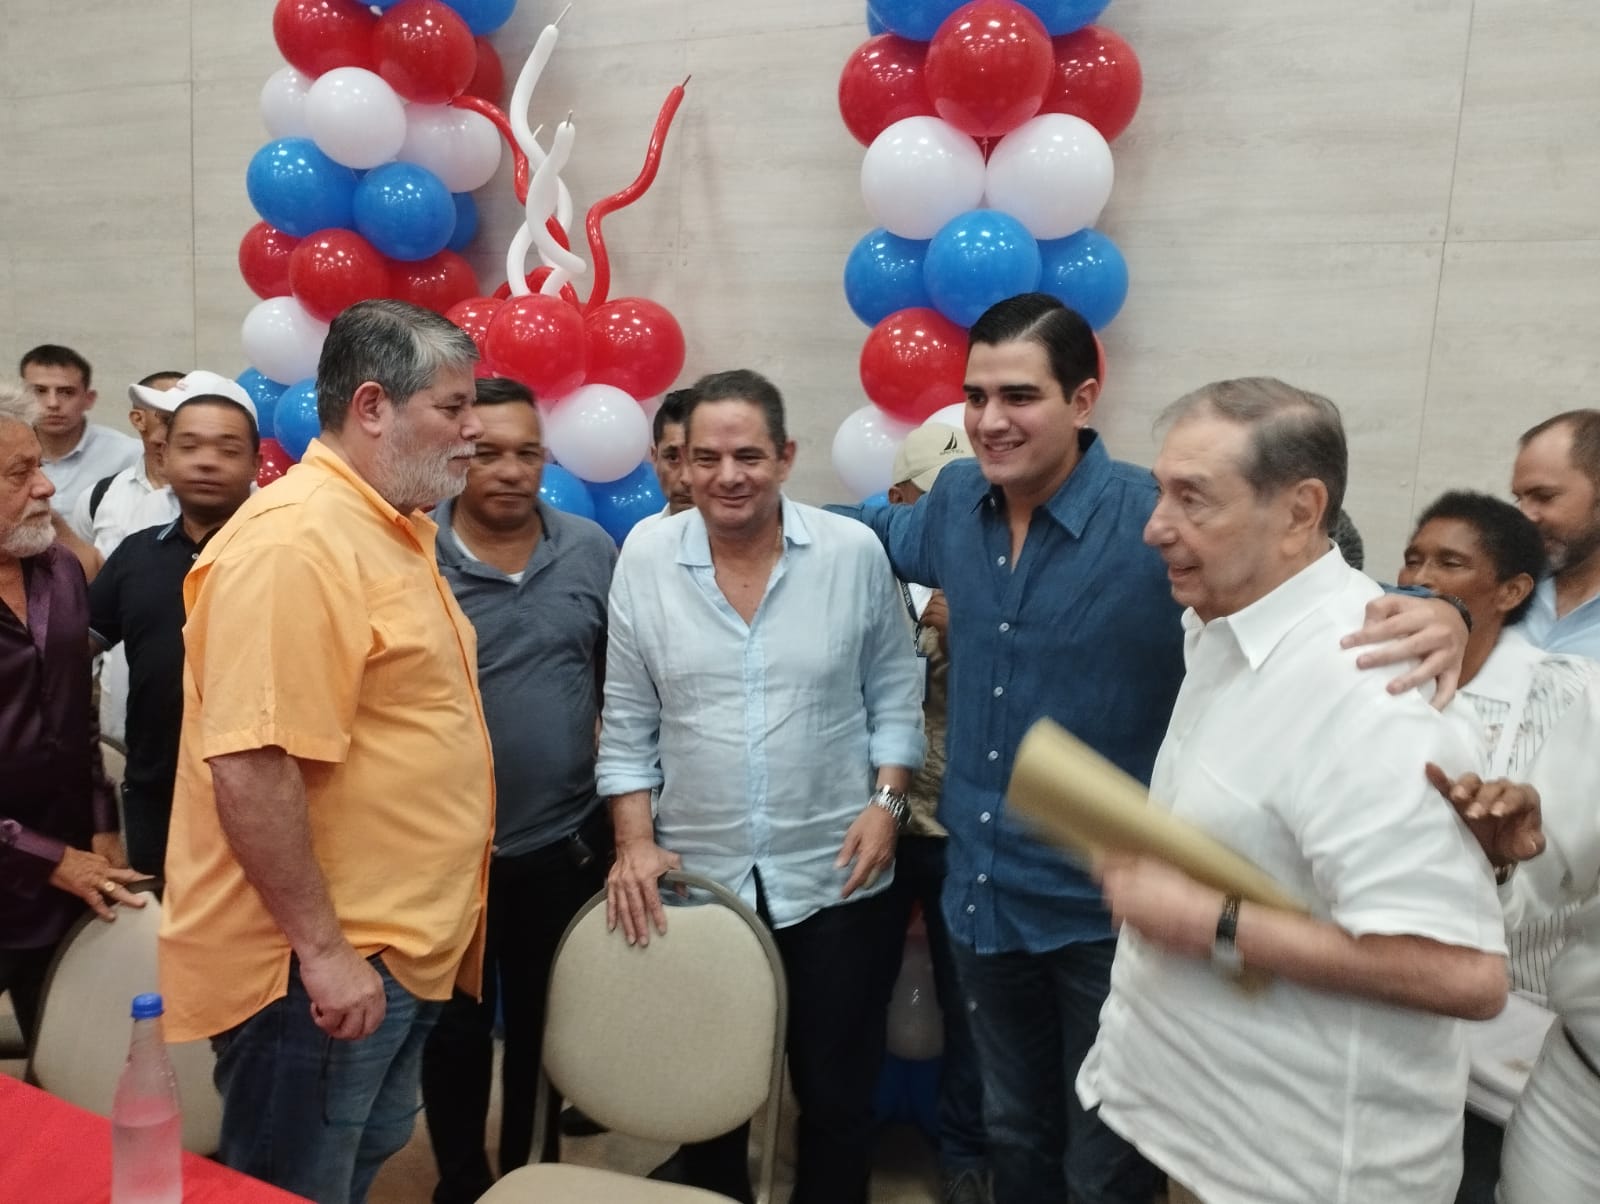 El jefe de Cambio Radical Germán Vargas Lleras, el senador Antonio Zabaraín, el dirigente juvenil Juan David Abisambra y el exsenador Fuad Char Abdala.